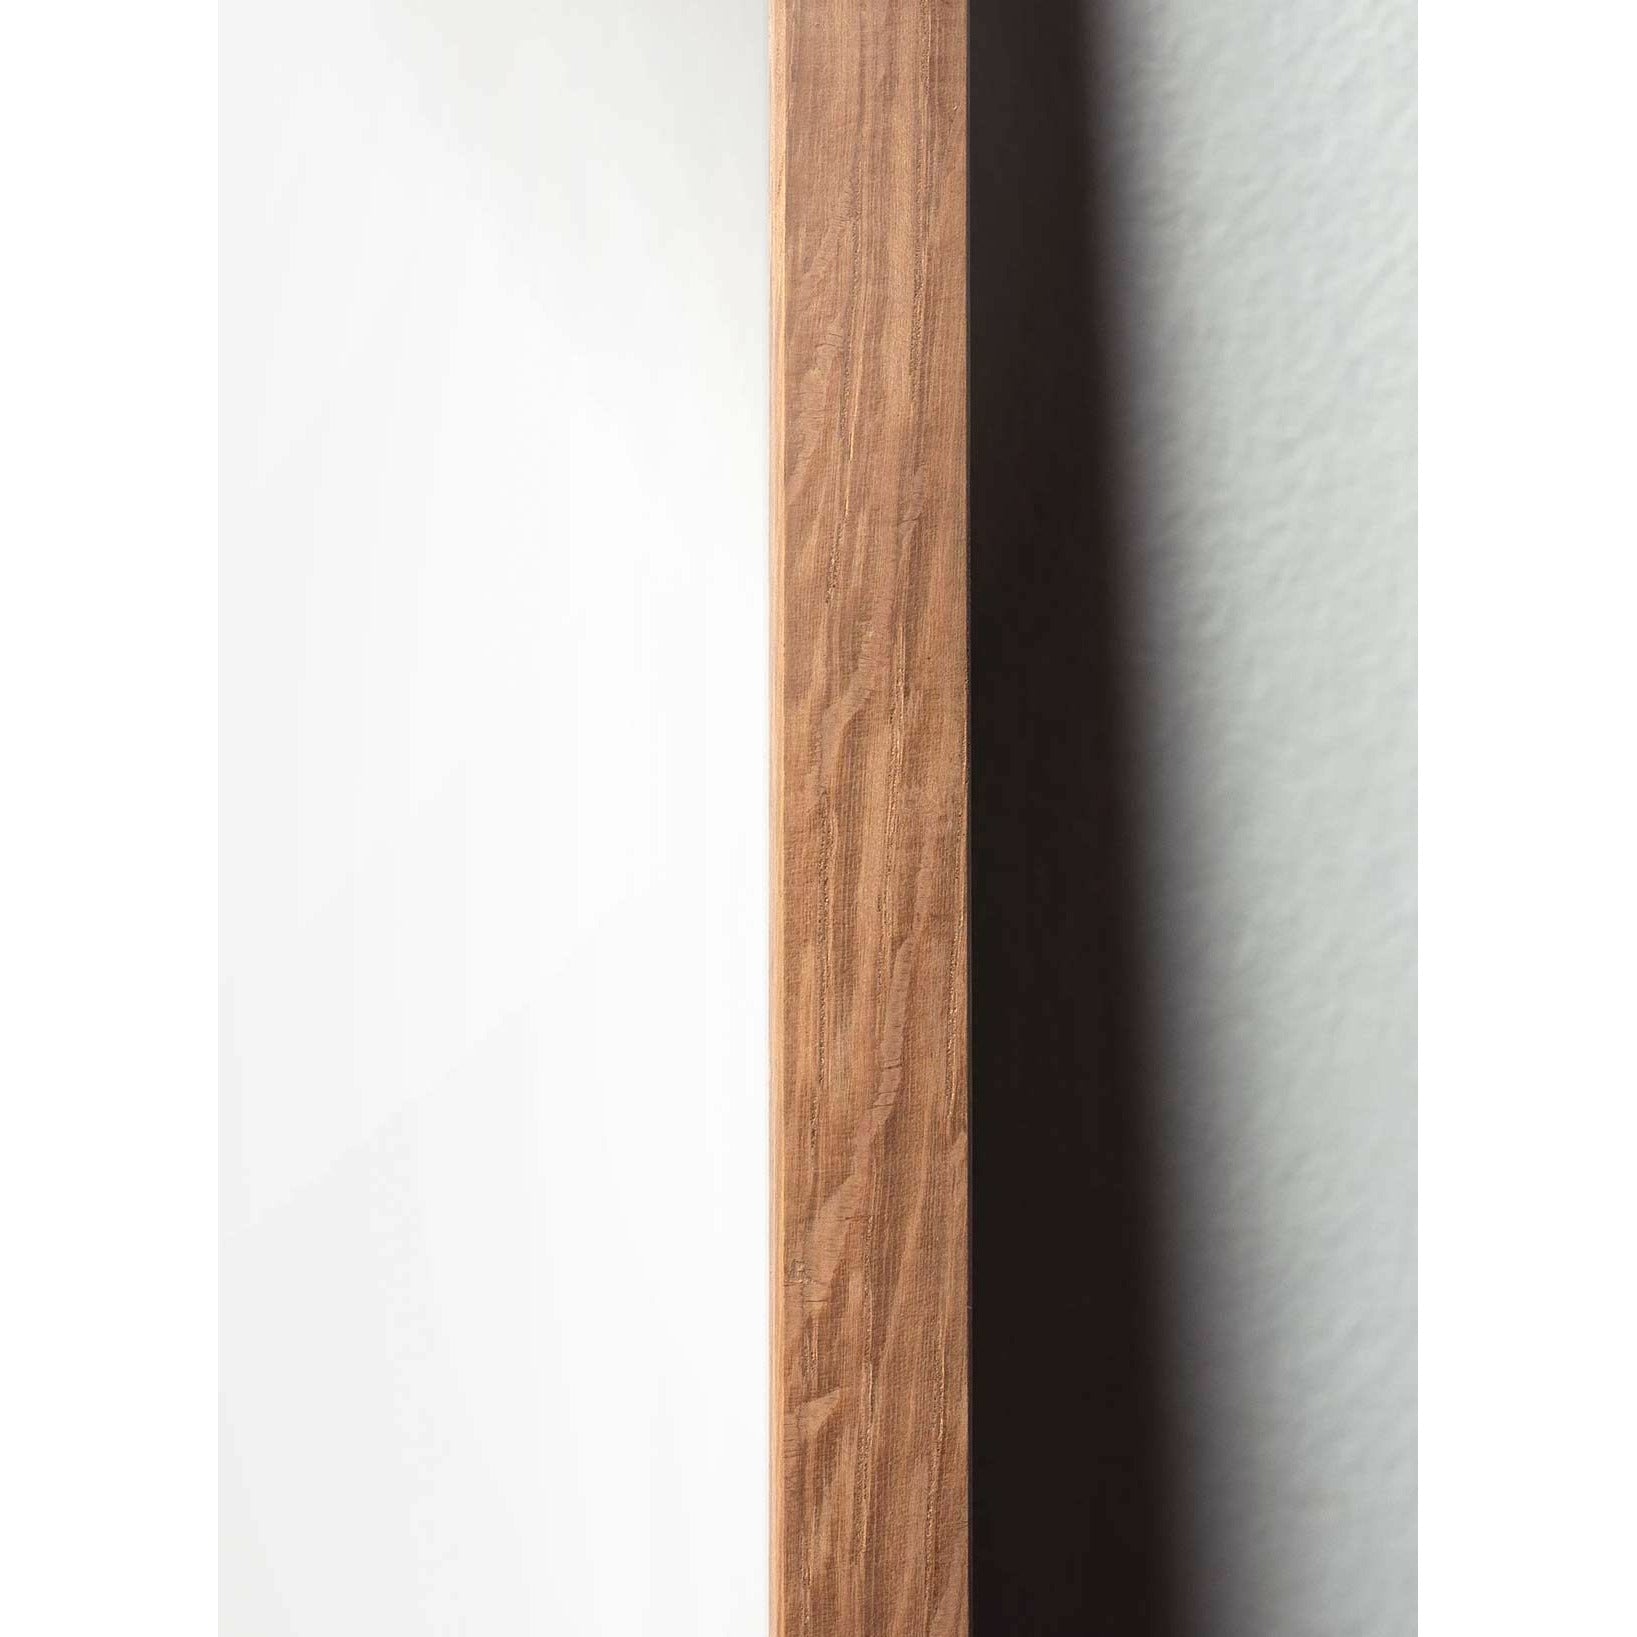 Póster de línea de cono de pino de creación, marco hecho de madera clara de 30x40 cm, fondo blanco